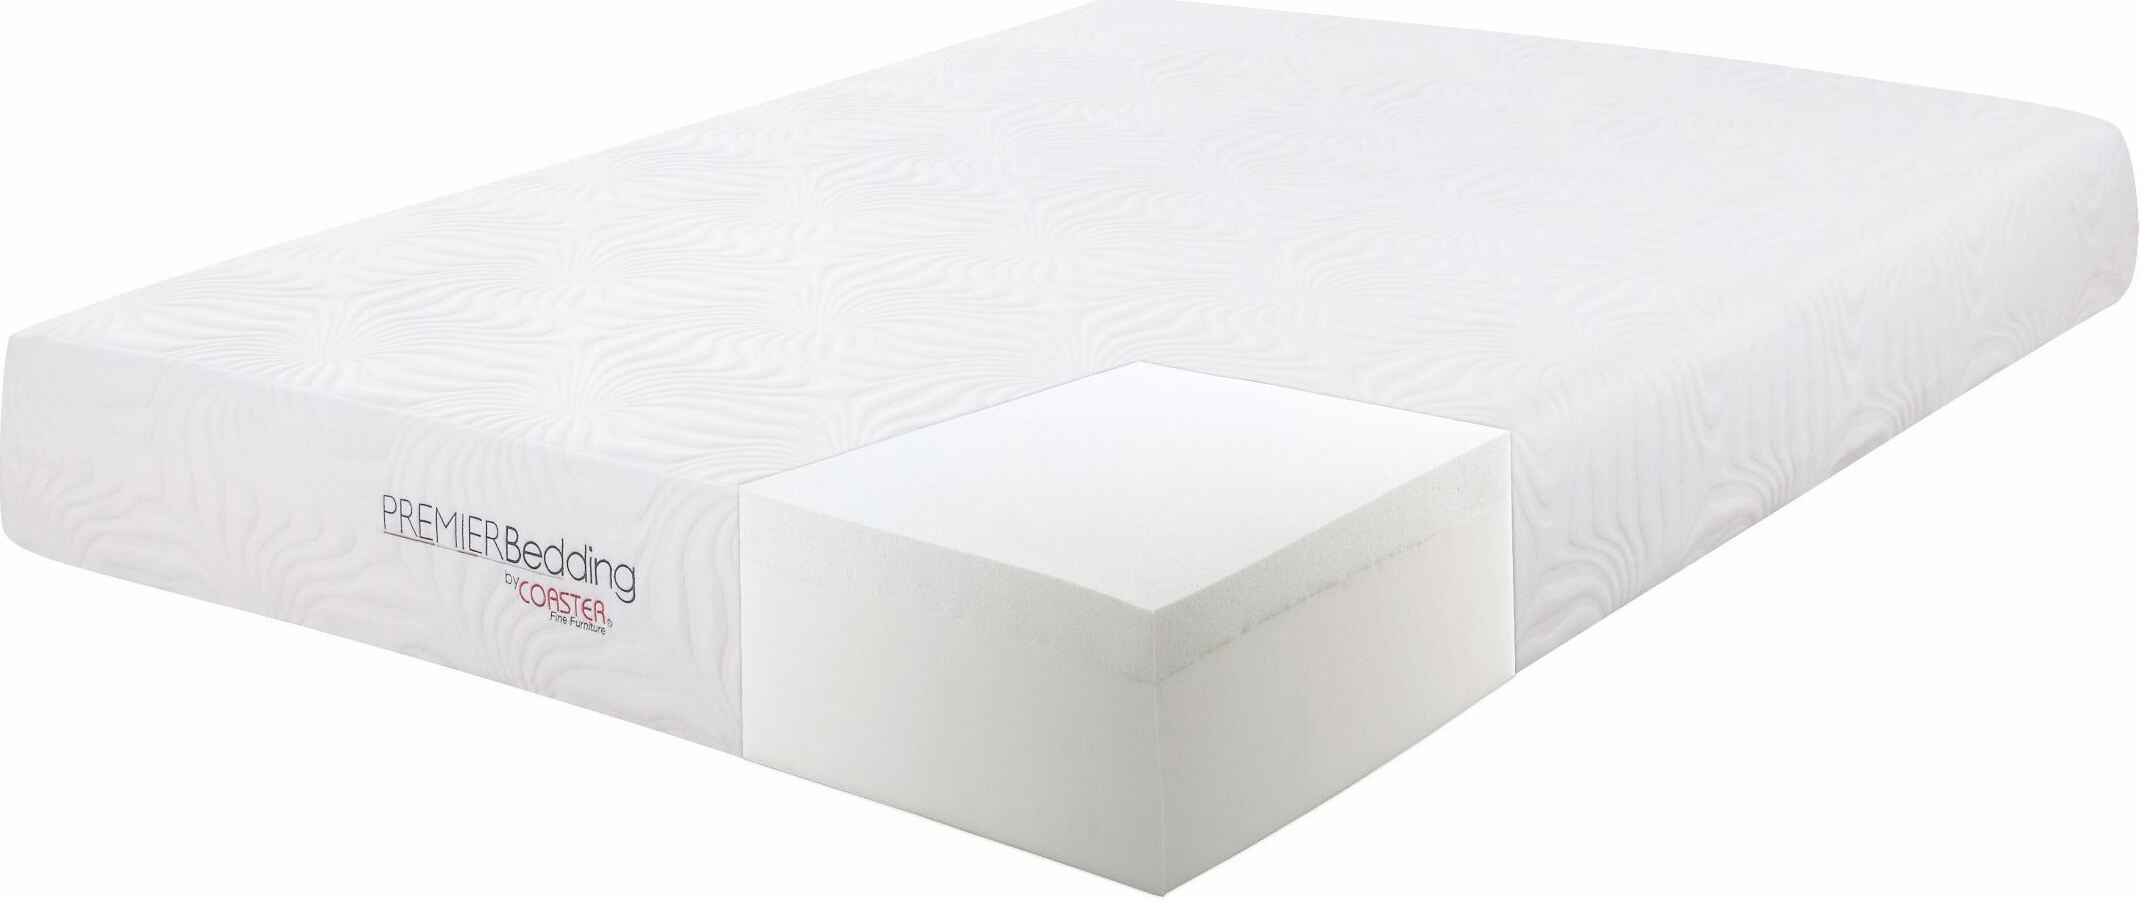 twin xl foam mattress